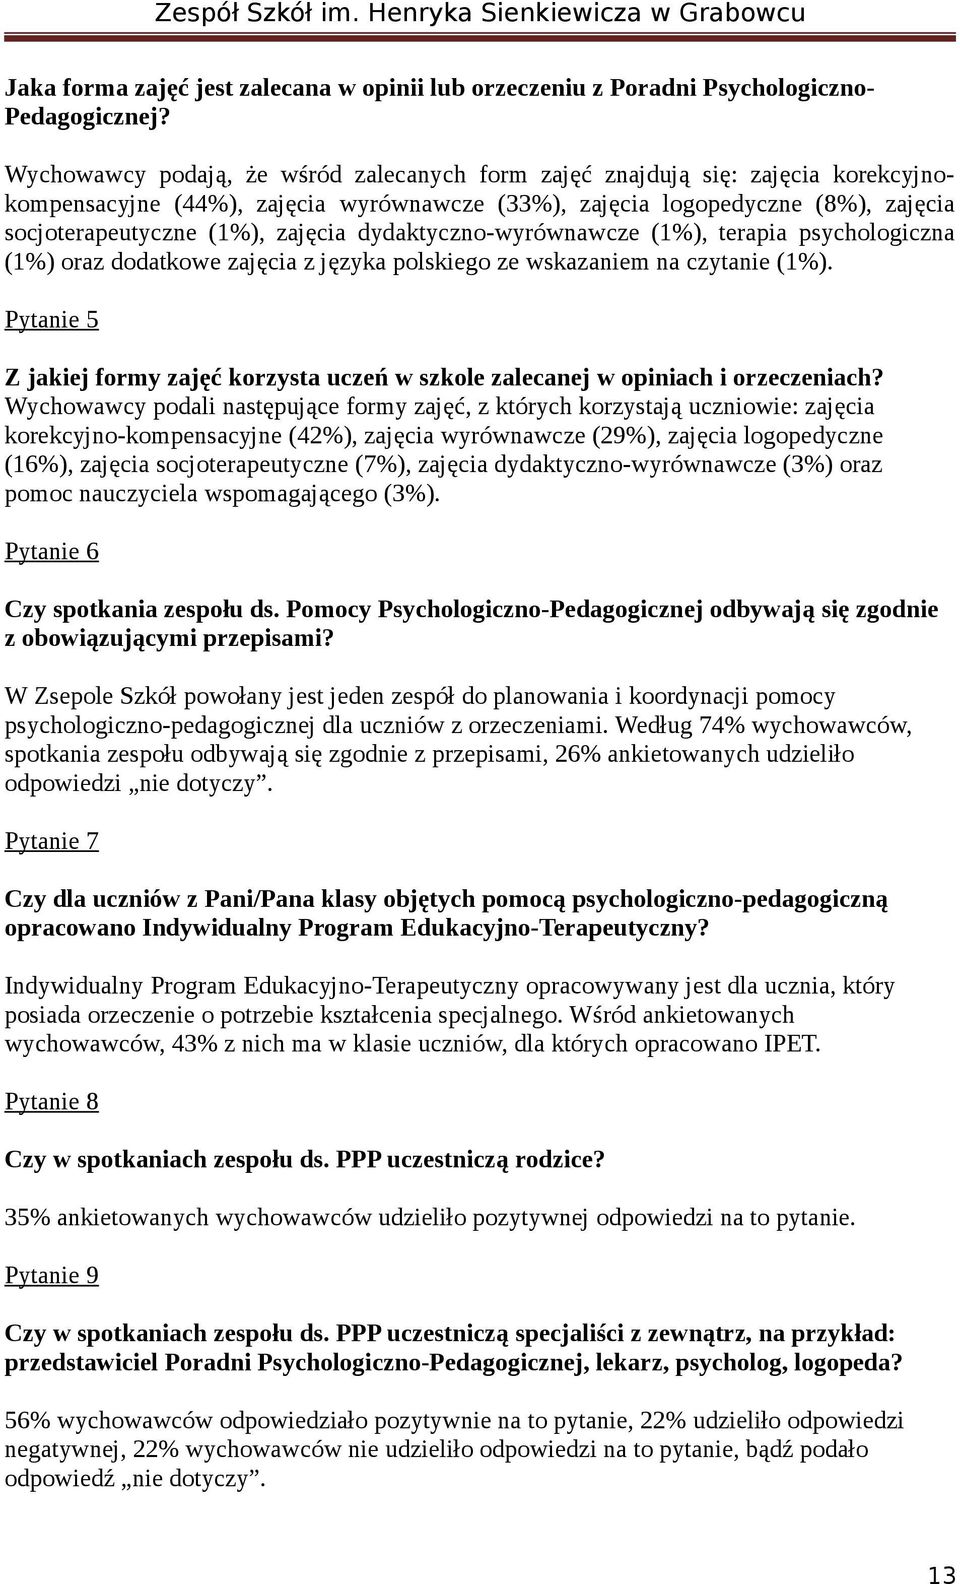 dydaktyczno-wyrównawcze (1%), terapia psychologiczna (1%) oraz dodatkowe zajęcia z języka polskiego ze wskazaniem na czytanie (1%).